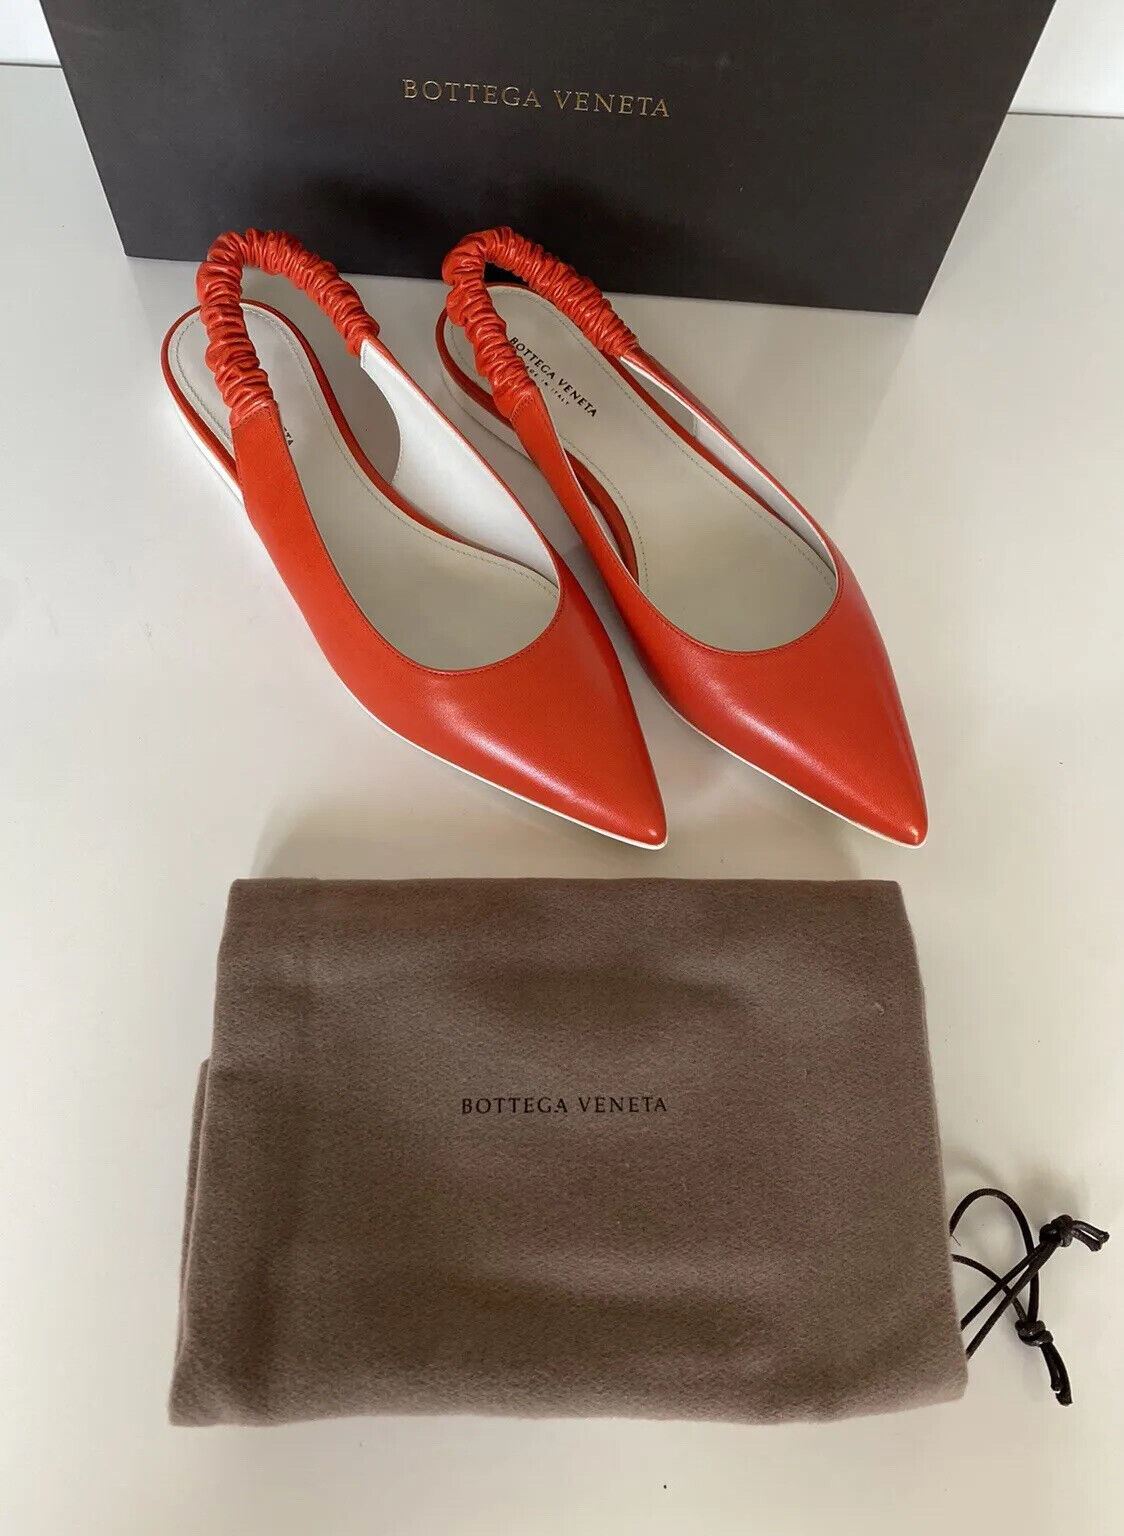 NIB Женские туфли-лодочки на плоской подошве Bottega Veneta, 620 долларов США, красновато-оранжевые, 8, США, 565640, Италия 